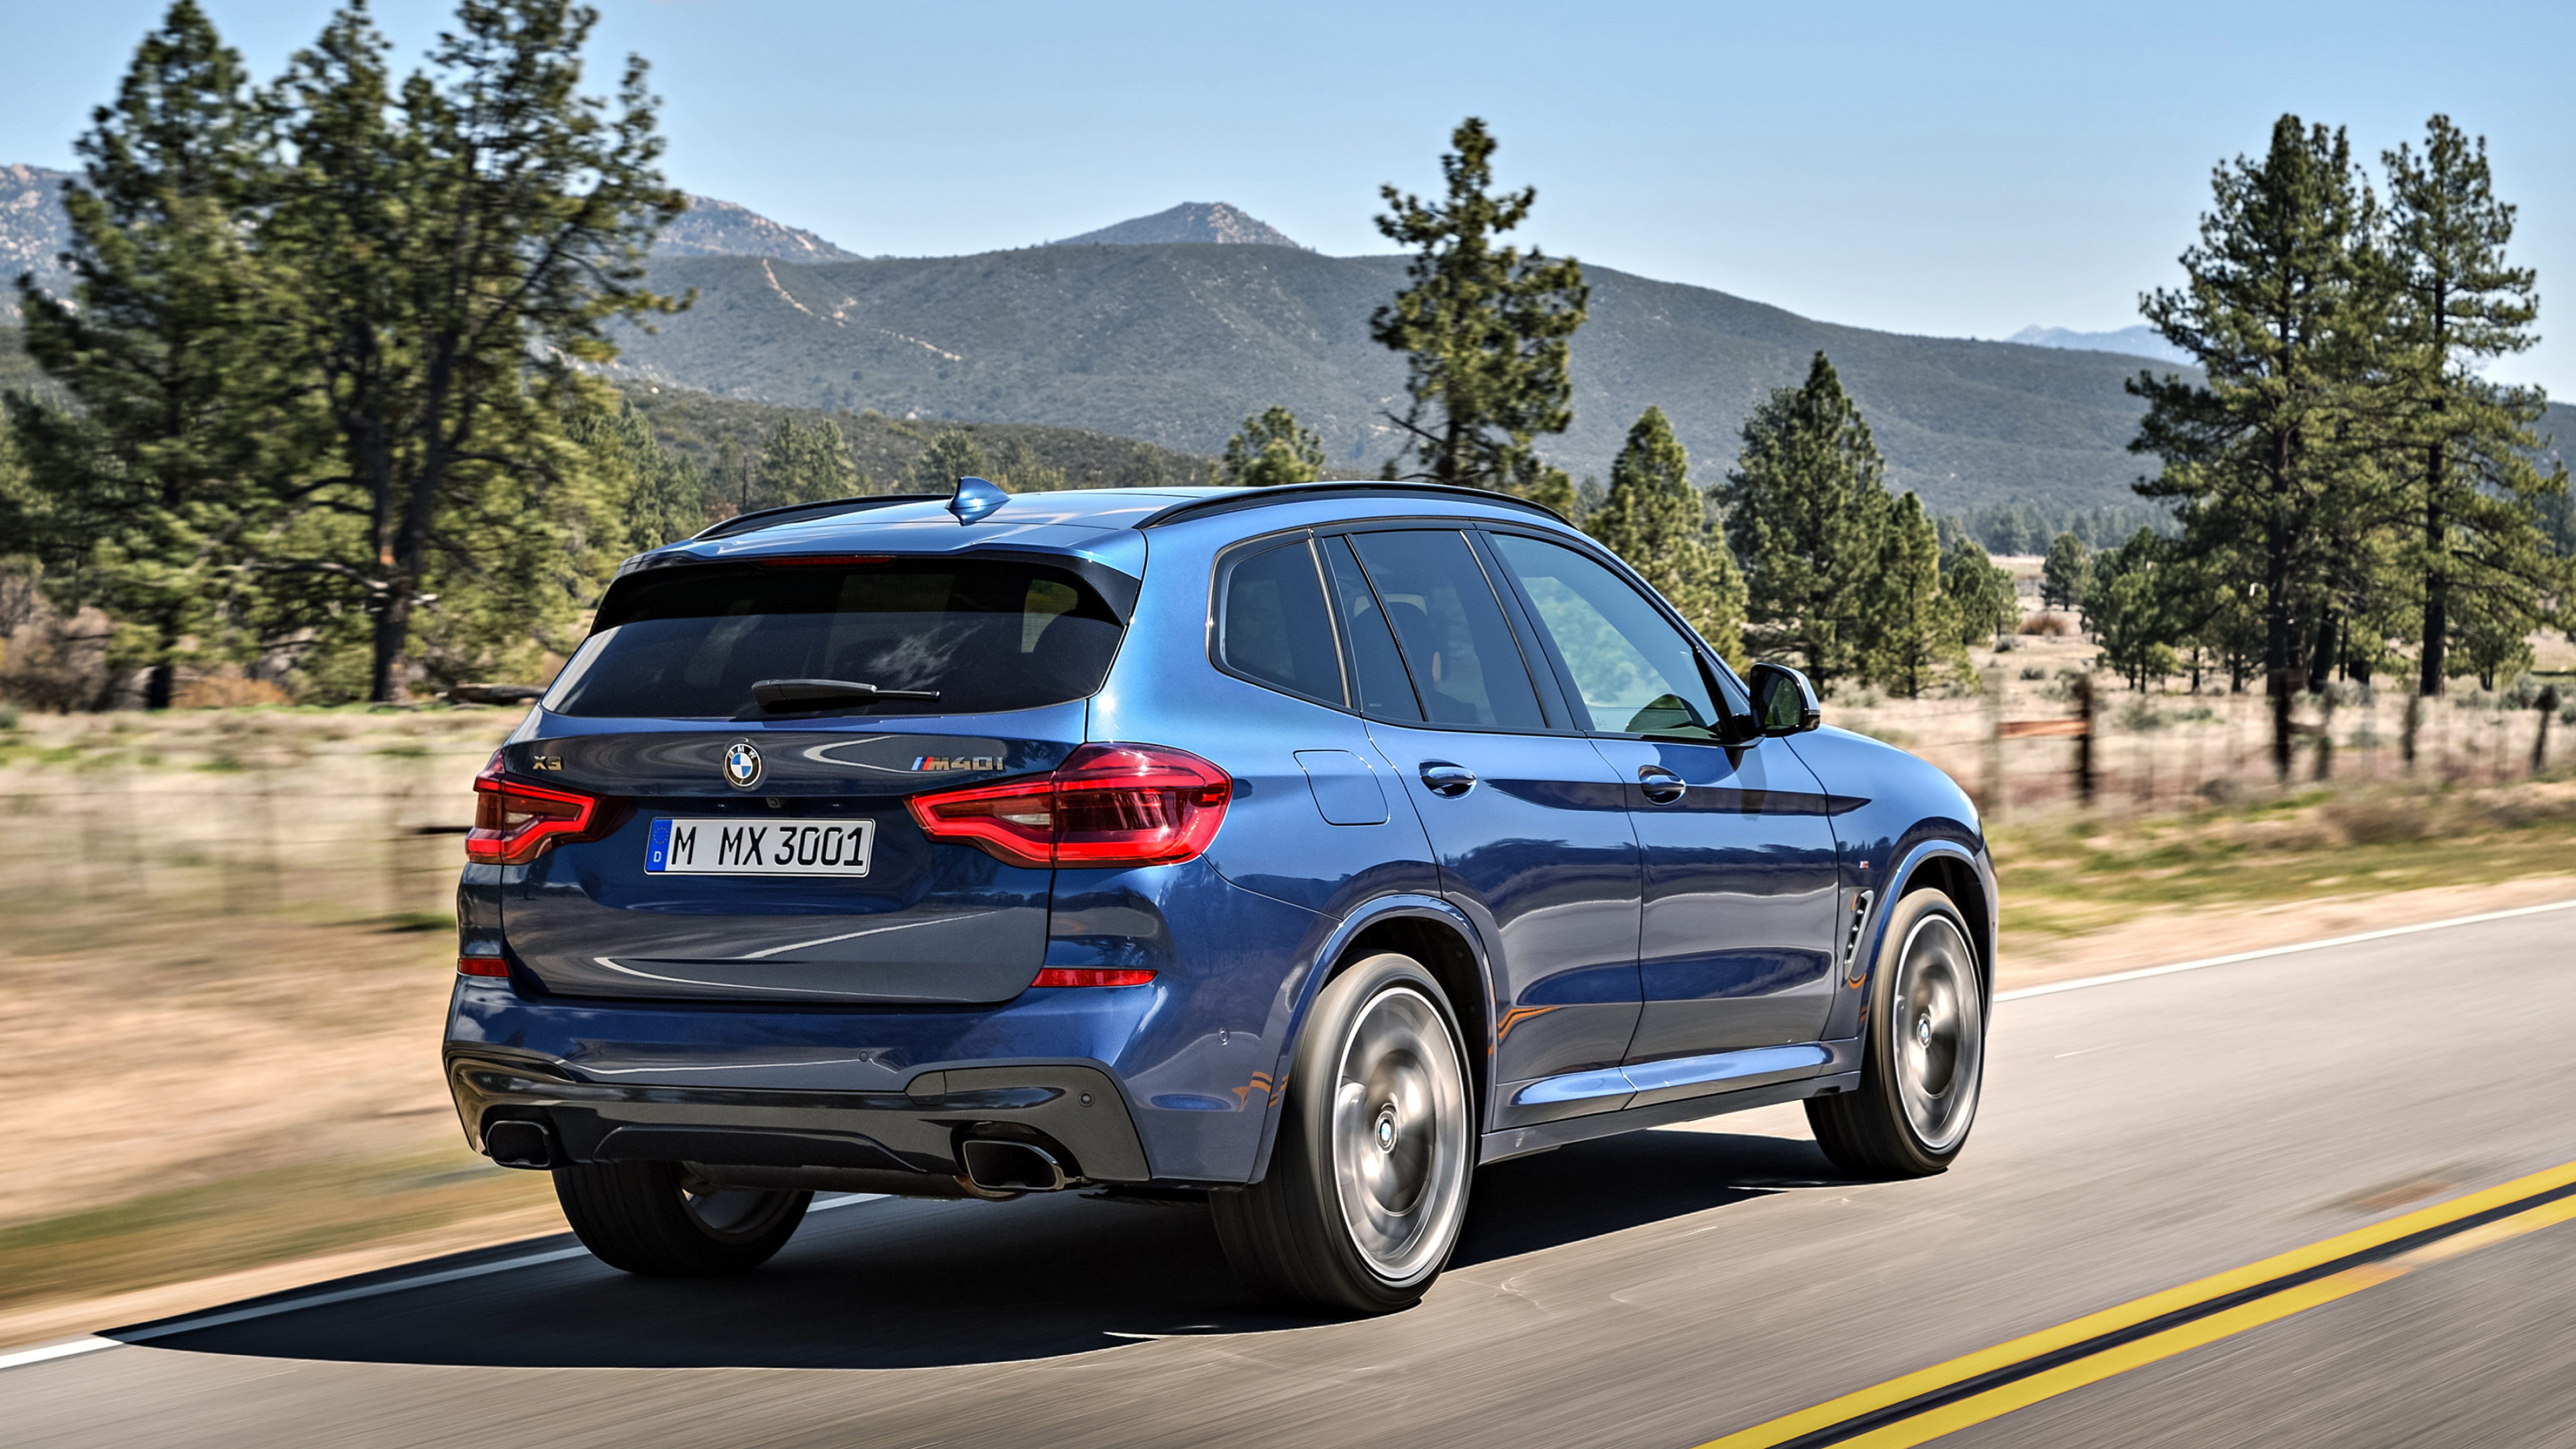 BMW X3, Auto excellence, Automotive beauty, Driving pleasure, 3840x2160 4K Desktop